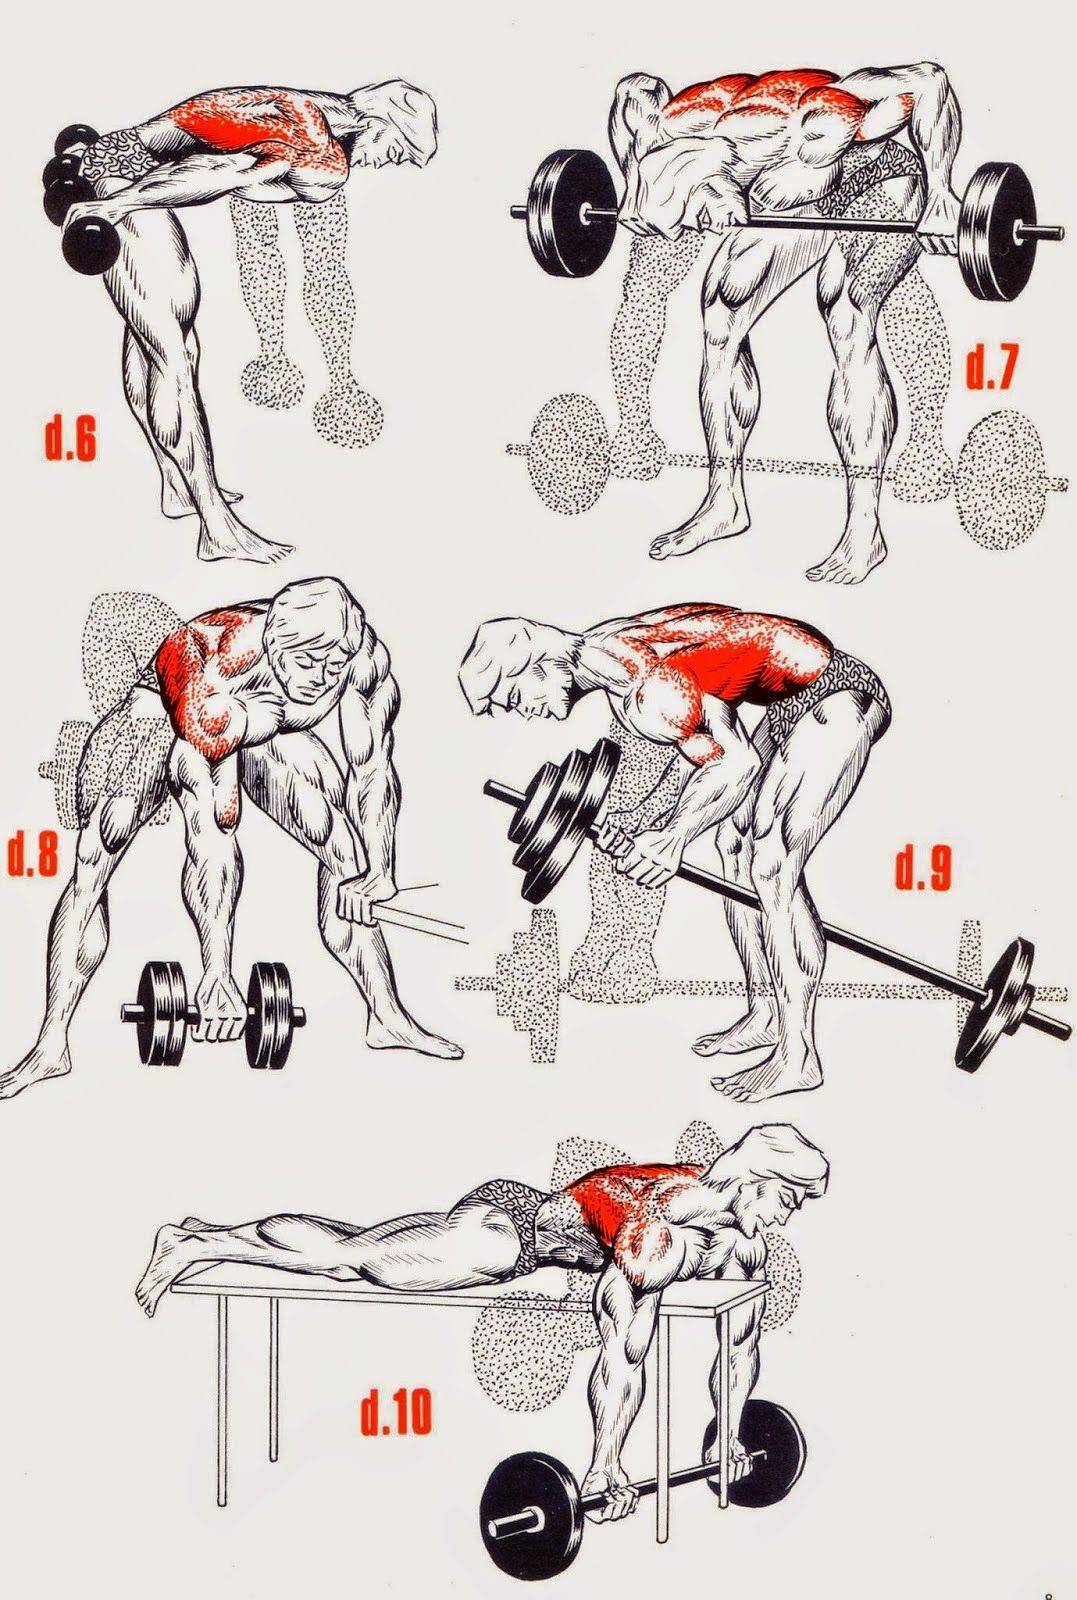 Как накачать мышцы быстро и правильно мужчине или девушке